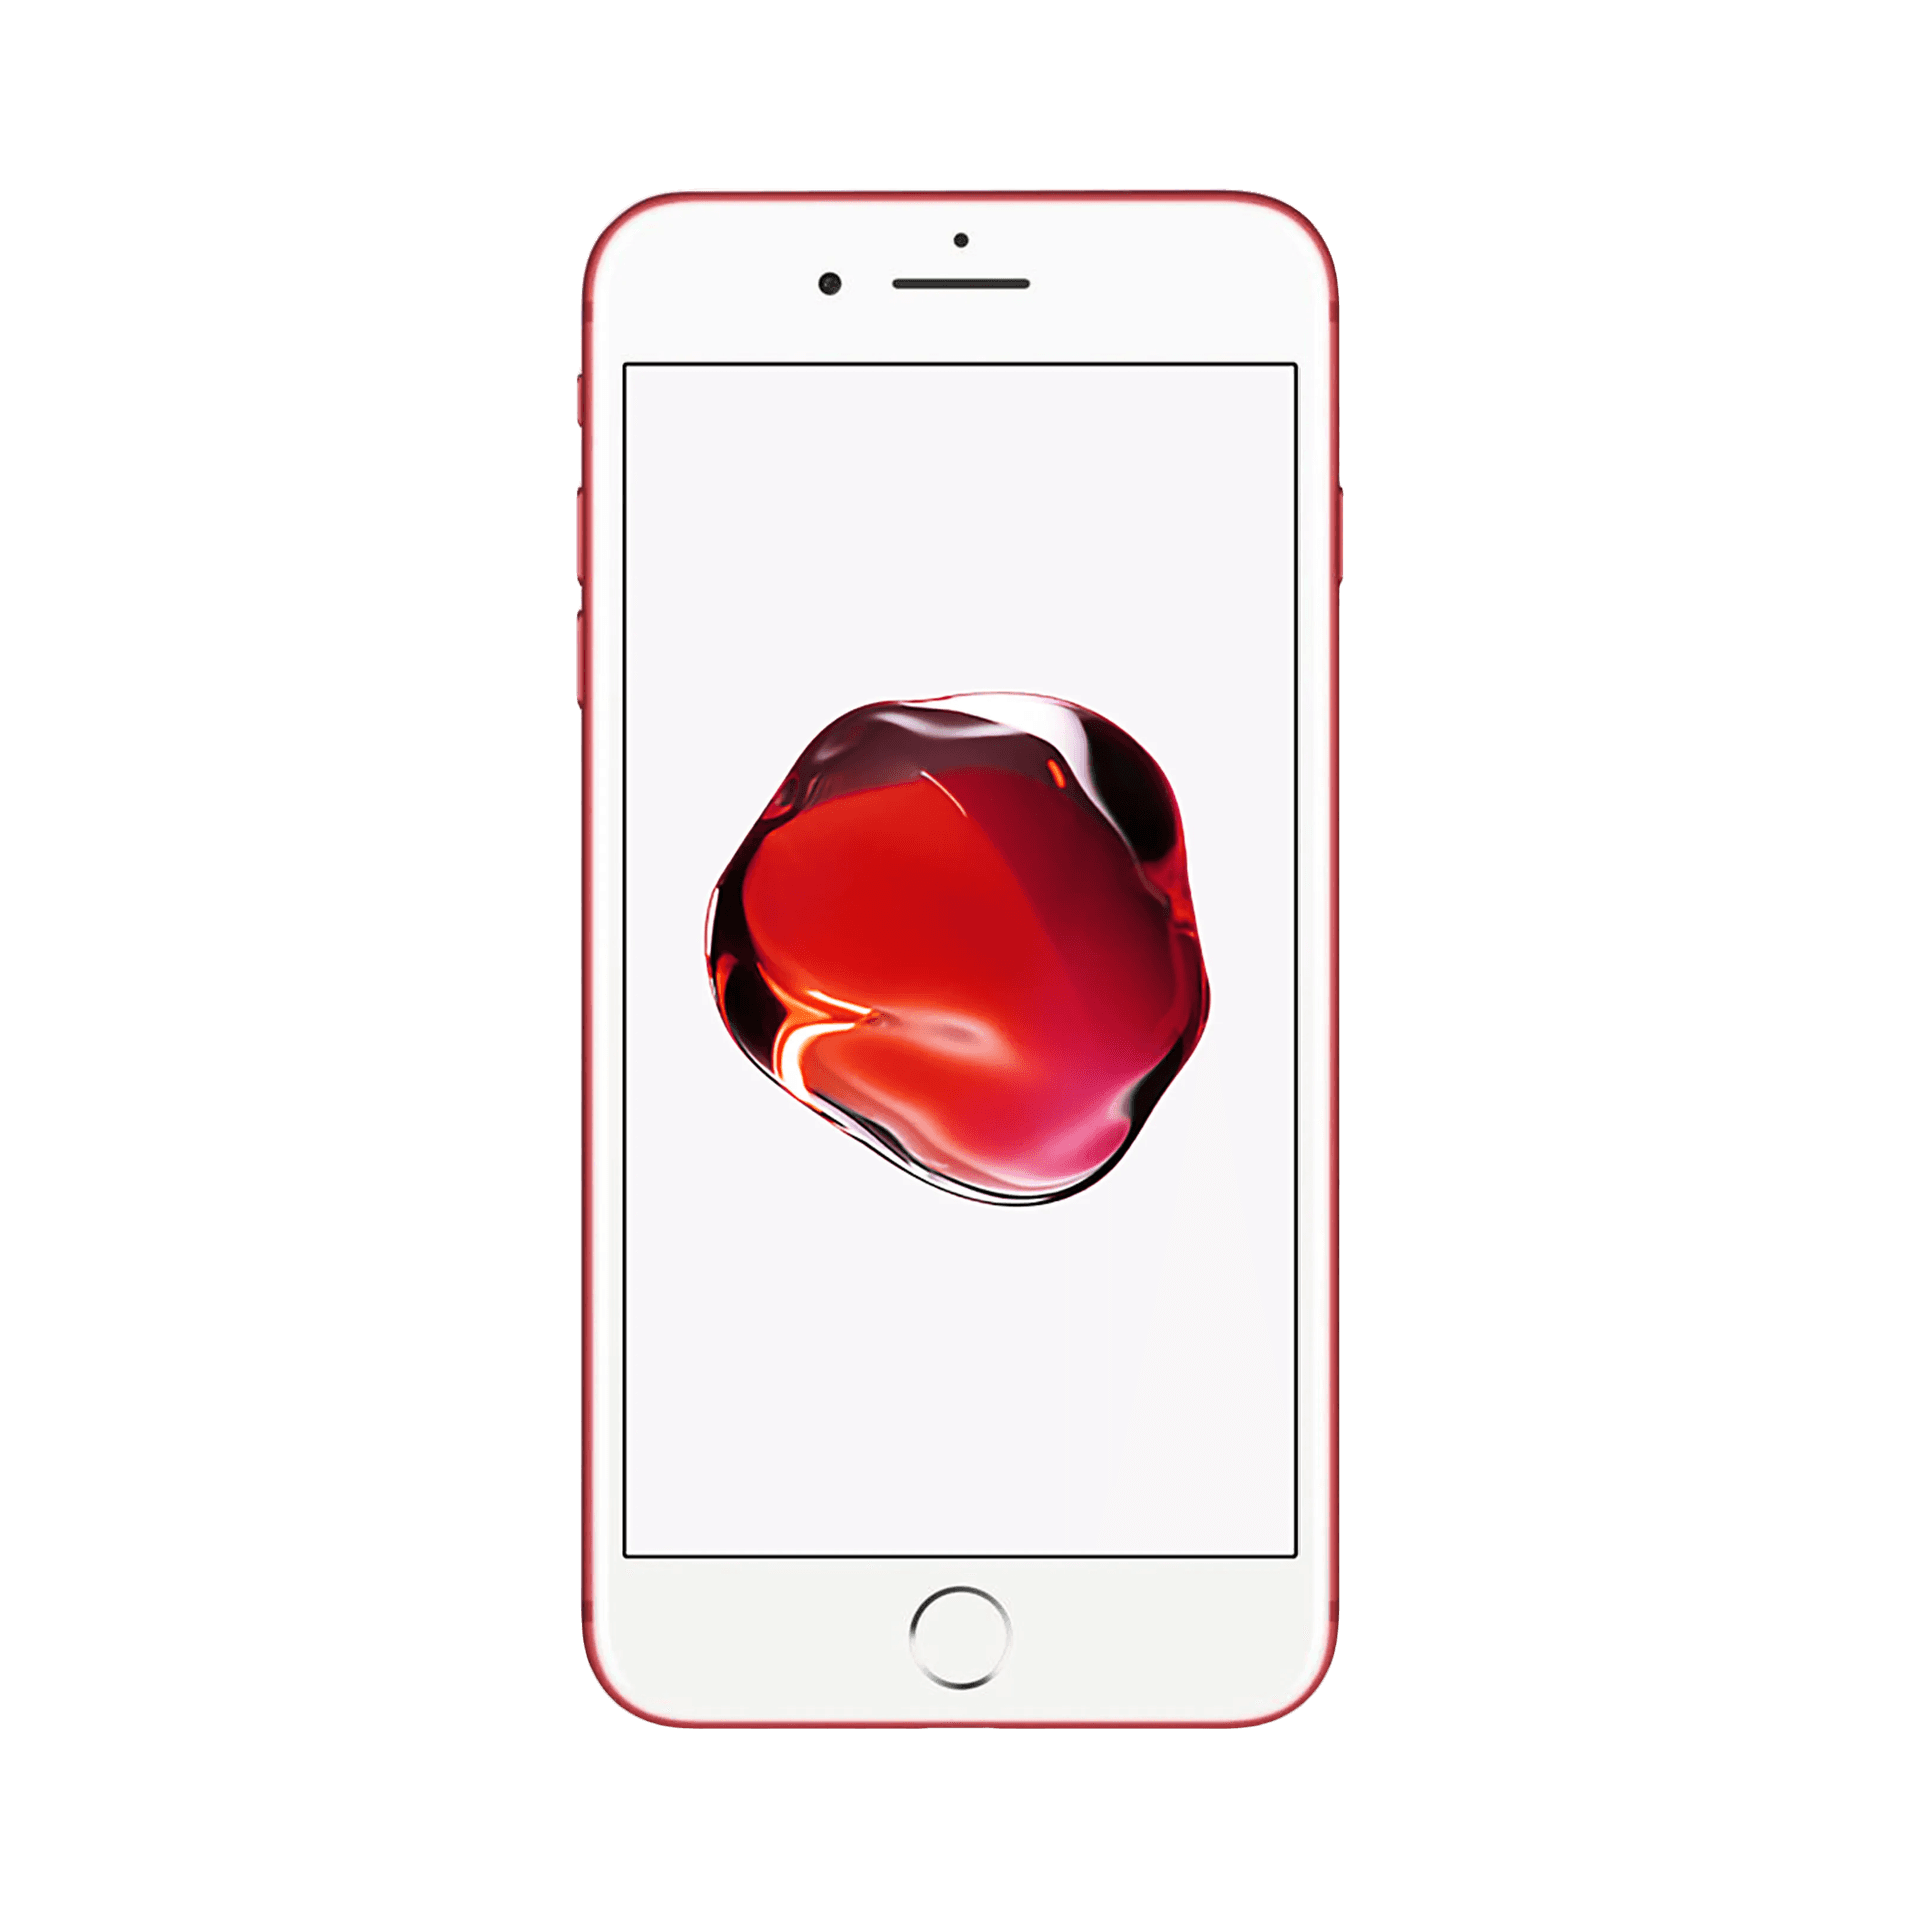 Apple iPhone 7 Plus - 128 GB - Red